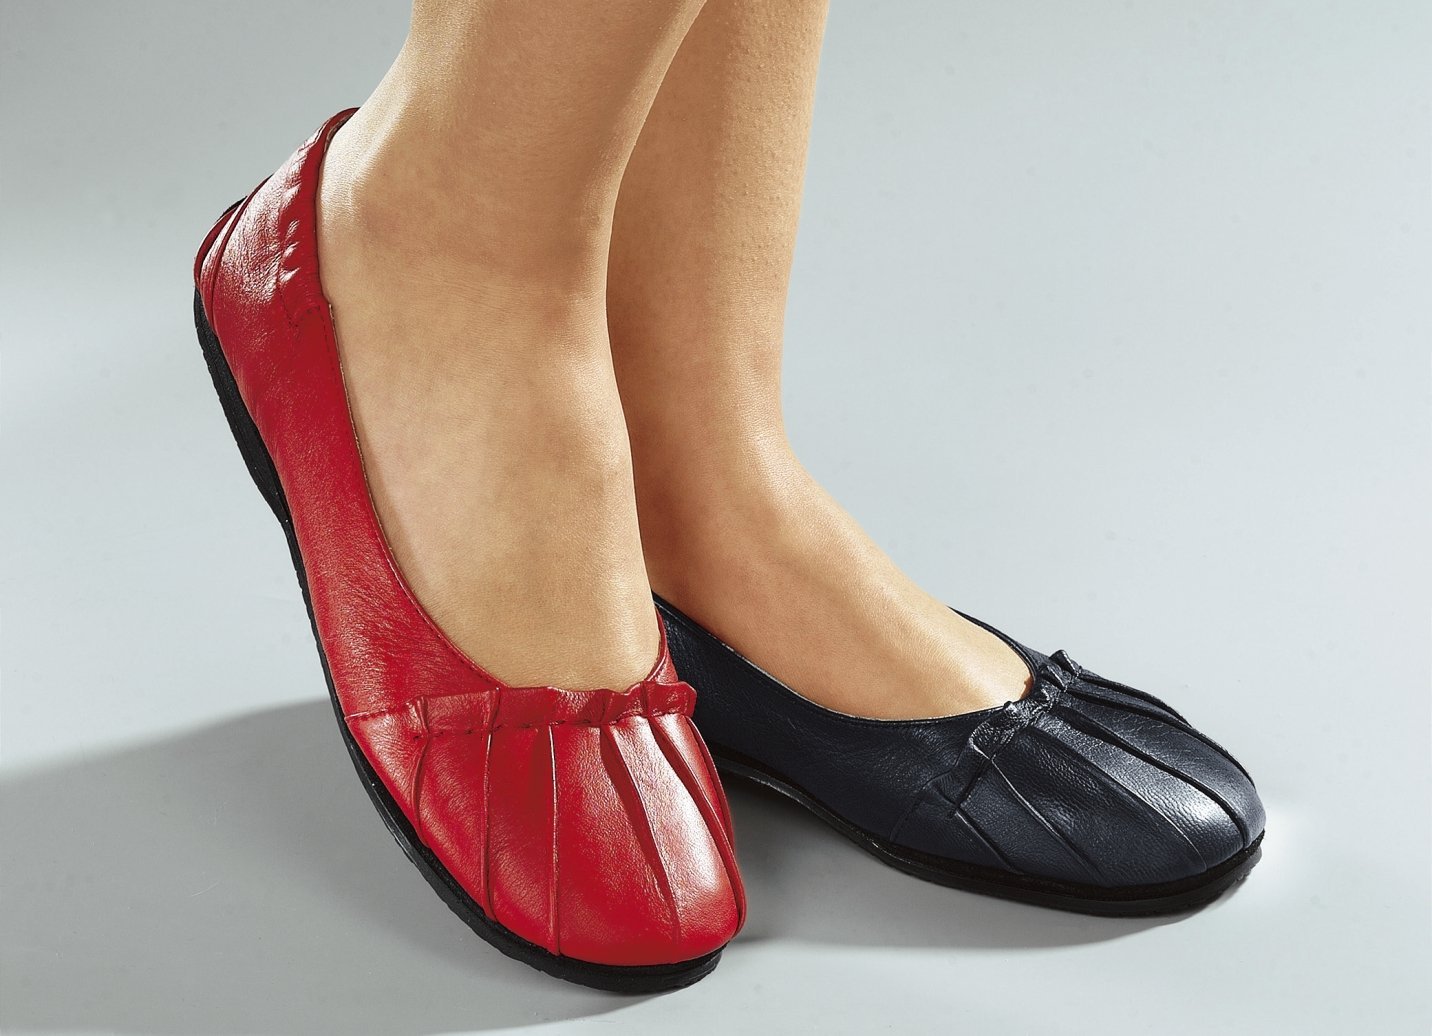 Обувь на широкую ногу спб. Обувь на валберис женская туфли на широкую ногу. Женская обувь больших размеров. Обувь для широкой стопы женская. Туфли на полную ногу женские.